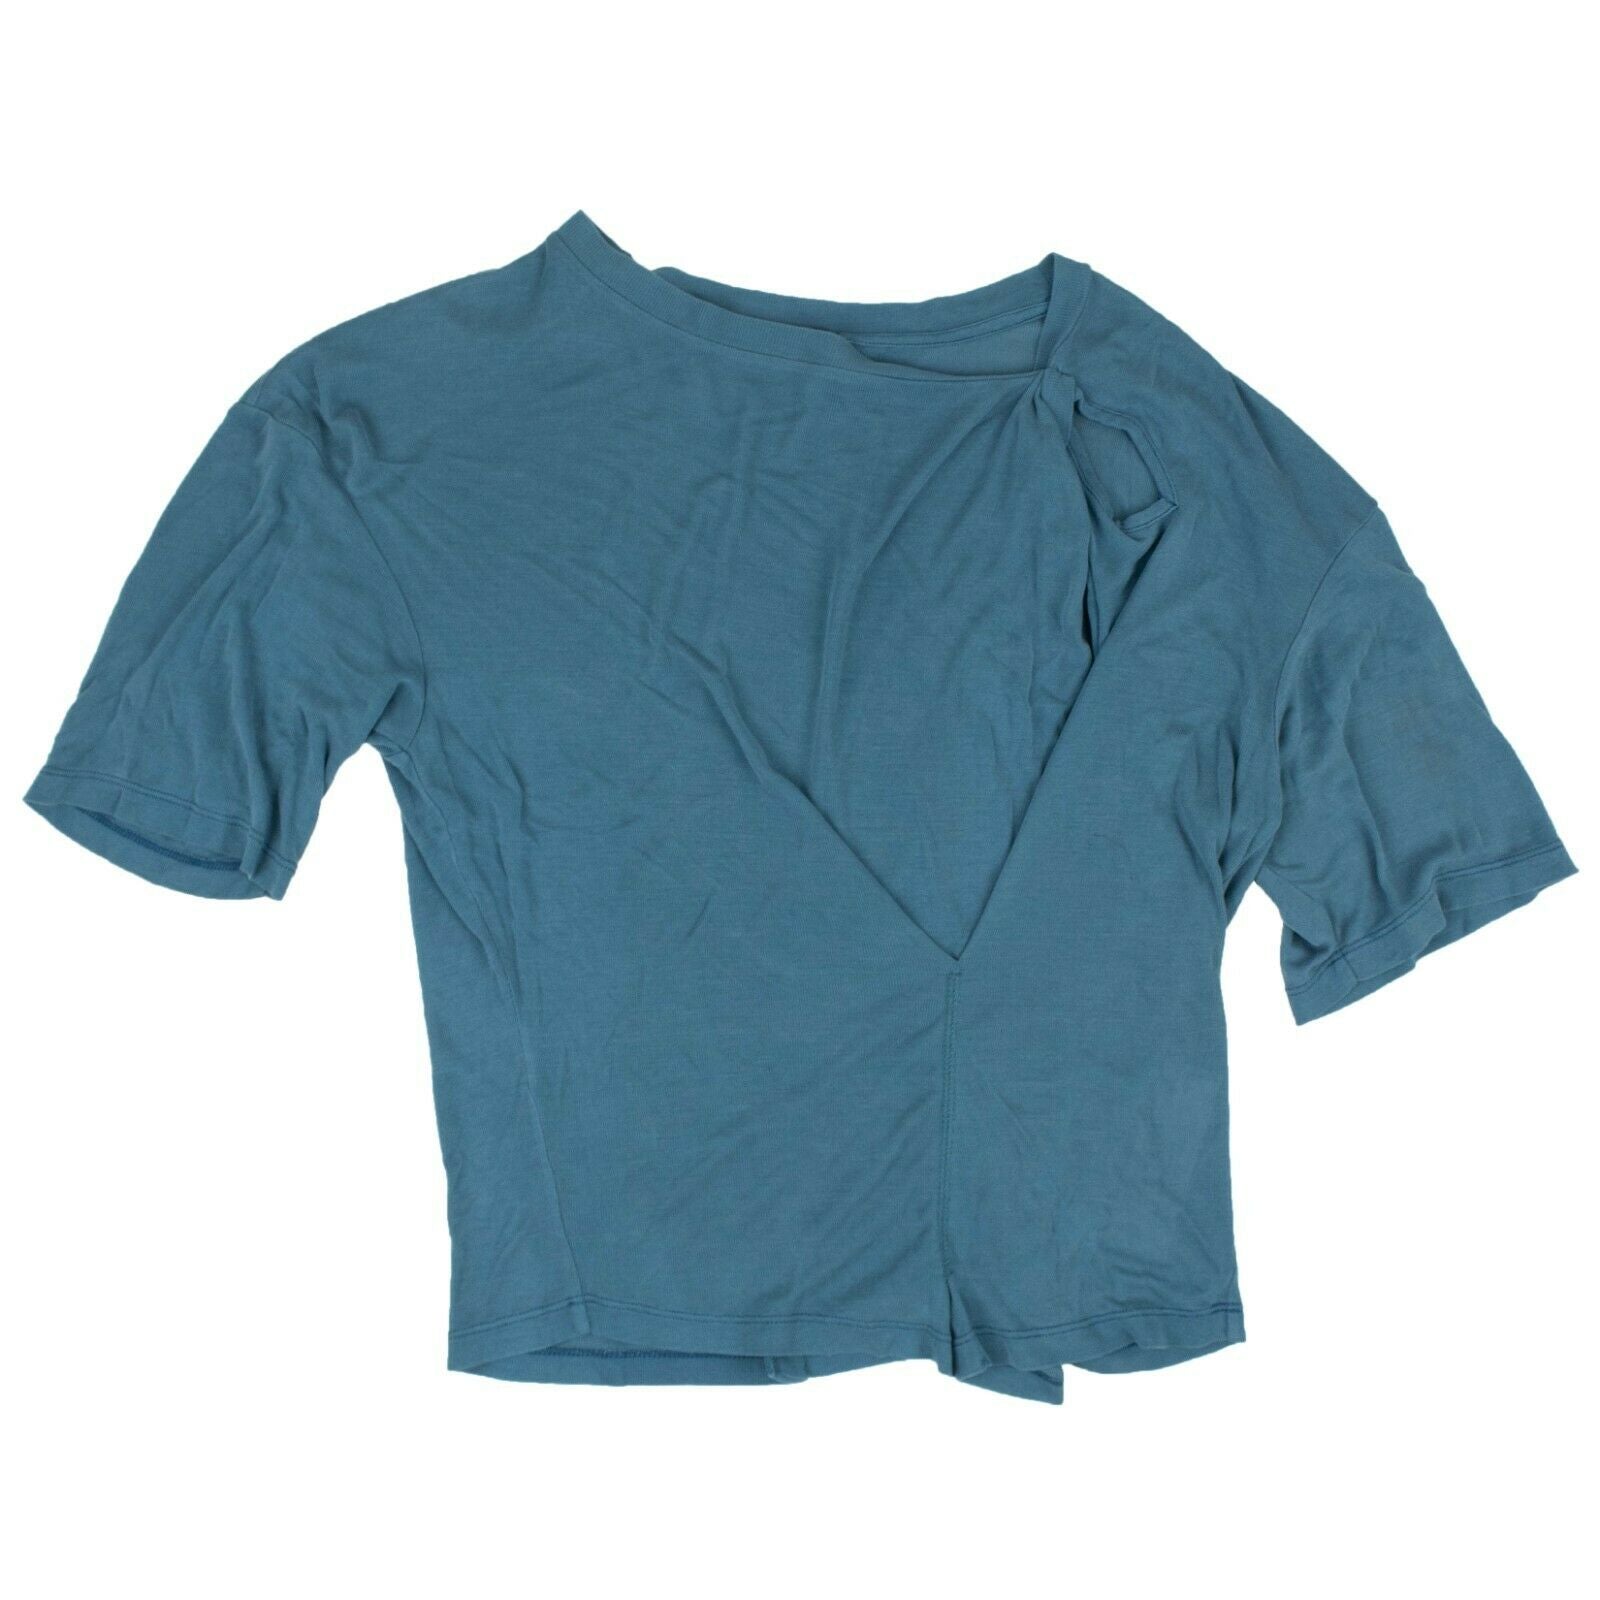 Ben Taverniti Unravel Project Twist T-shirt - Blue